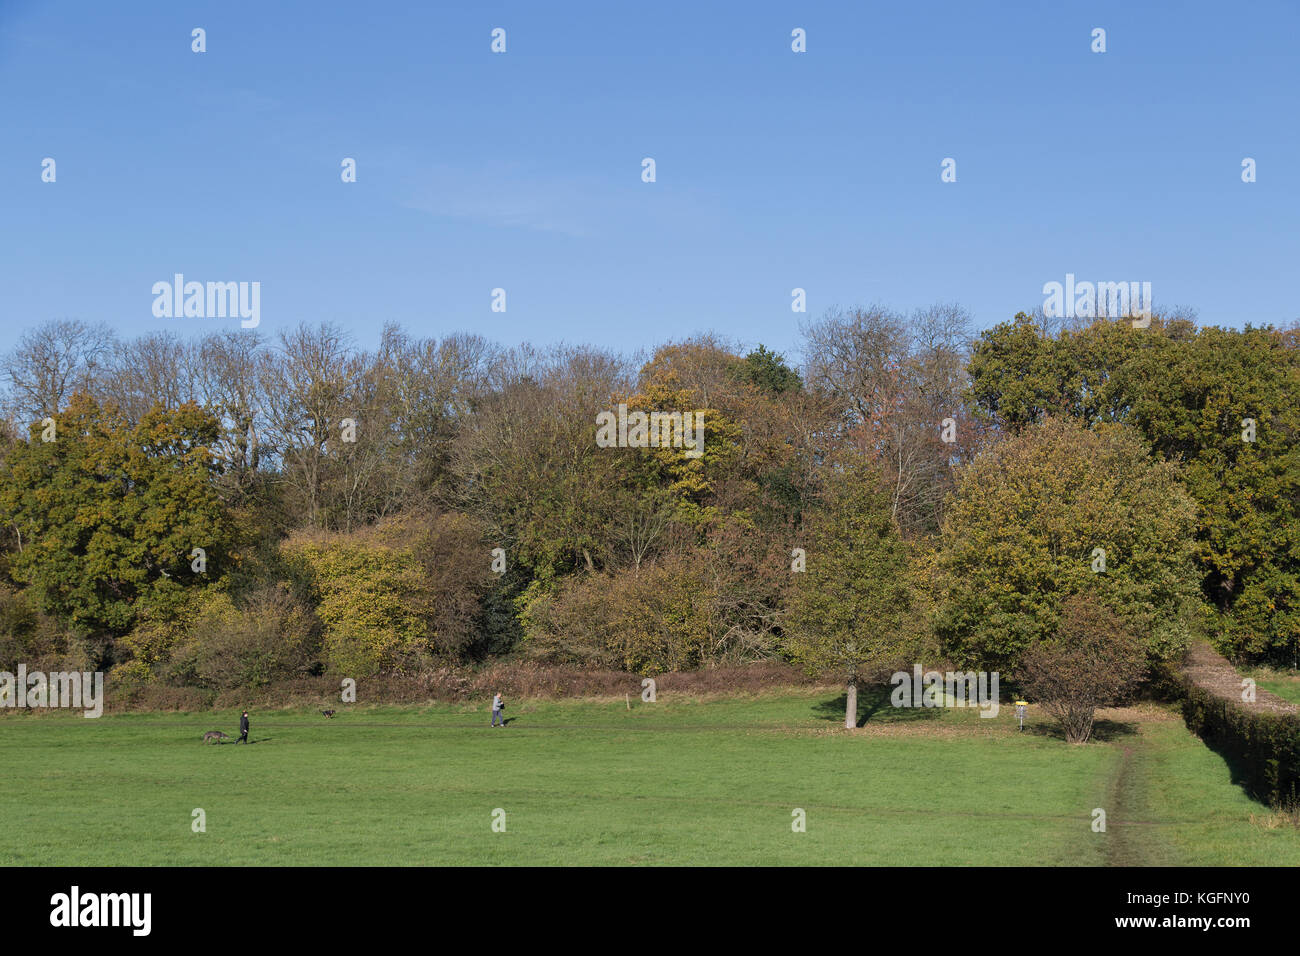 Lloyd Park in Croydon on an autumn morning Stock Photo - Alamy